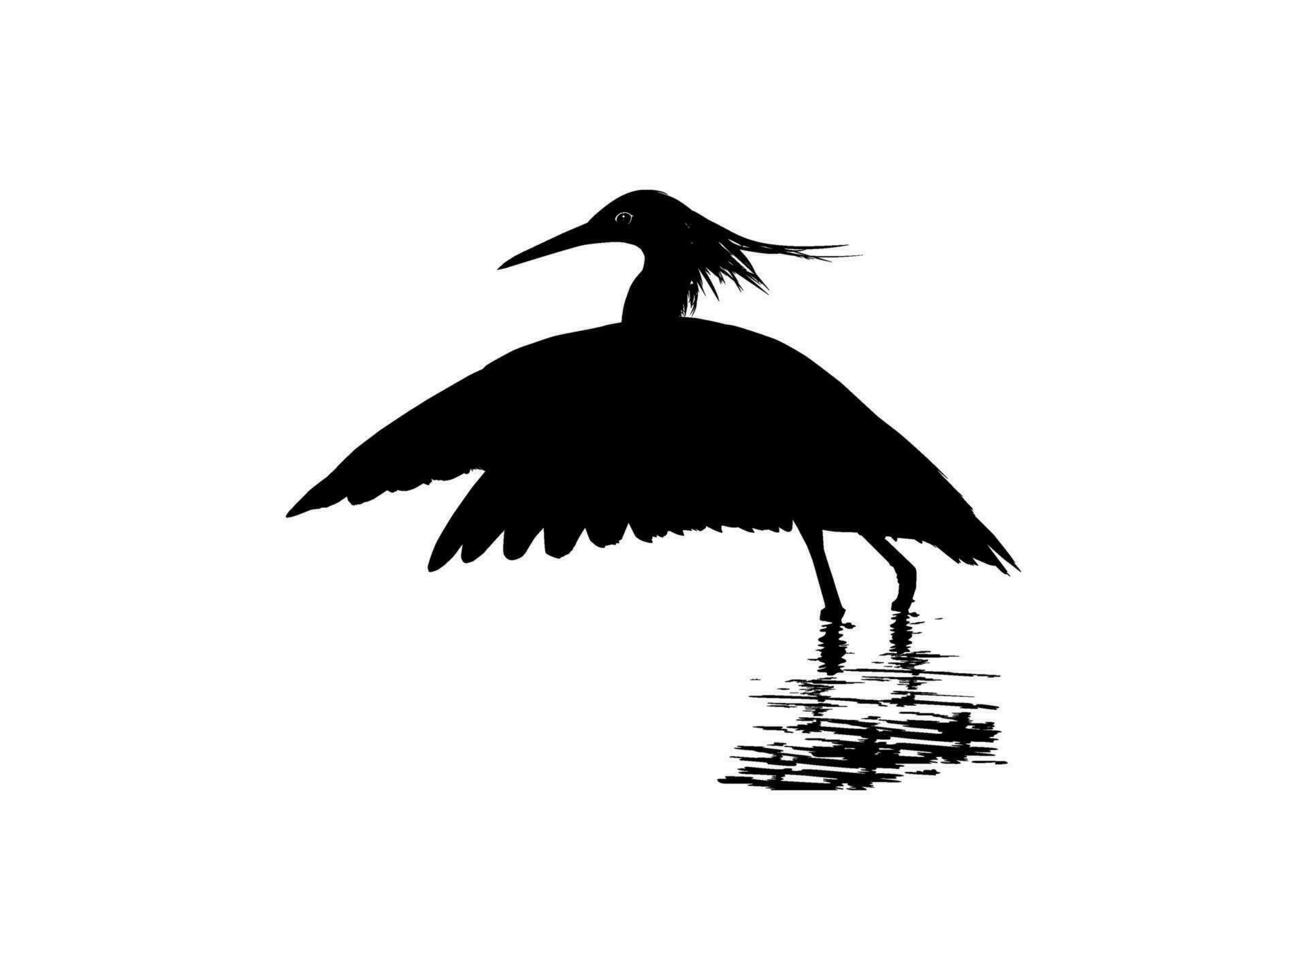 il nero airone uccello, egretta ardesiaca, anche conosciuto come il nero Airone silhouette per arte illustrazione, logo, pittogramma, sito web, o grafico design elemento. vettore illustrazione